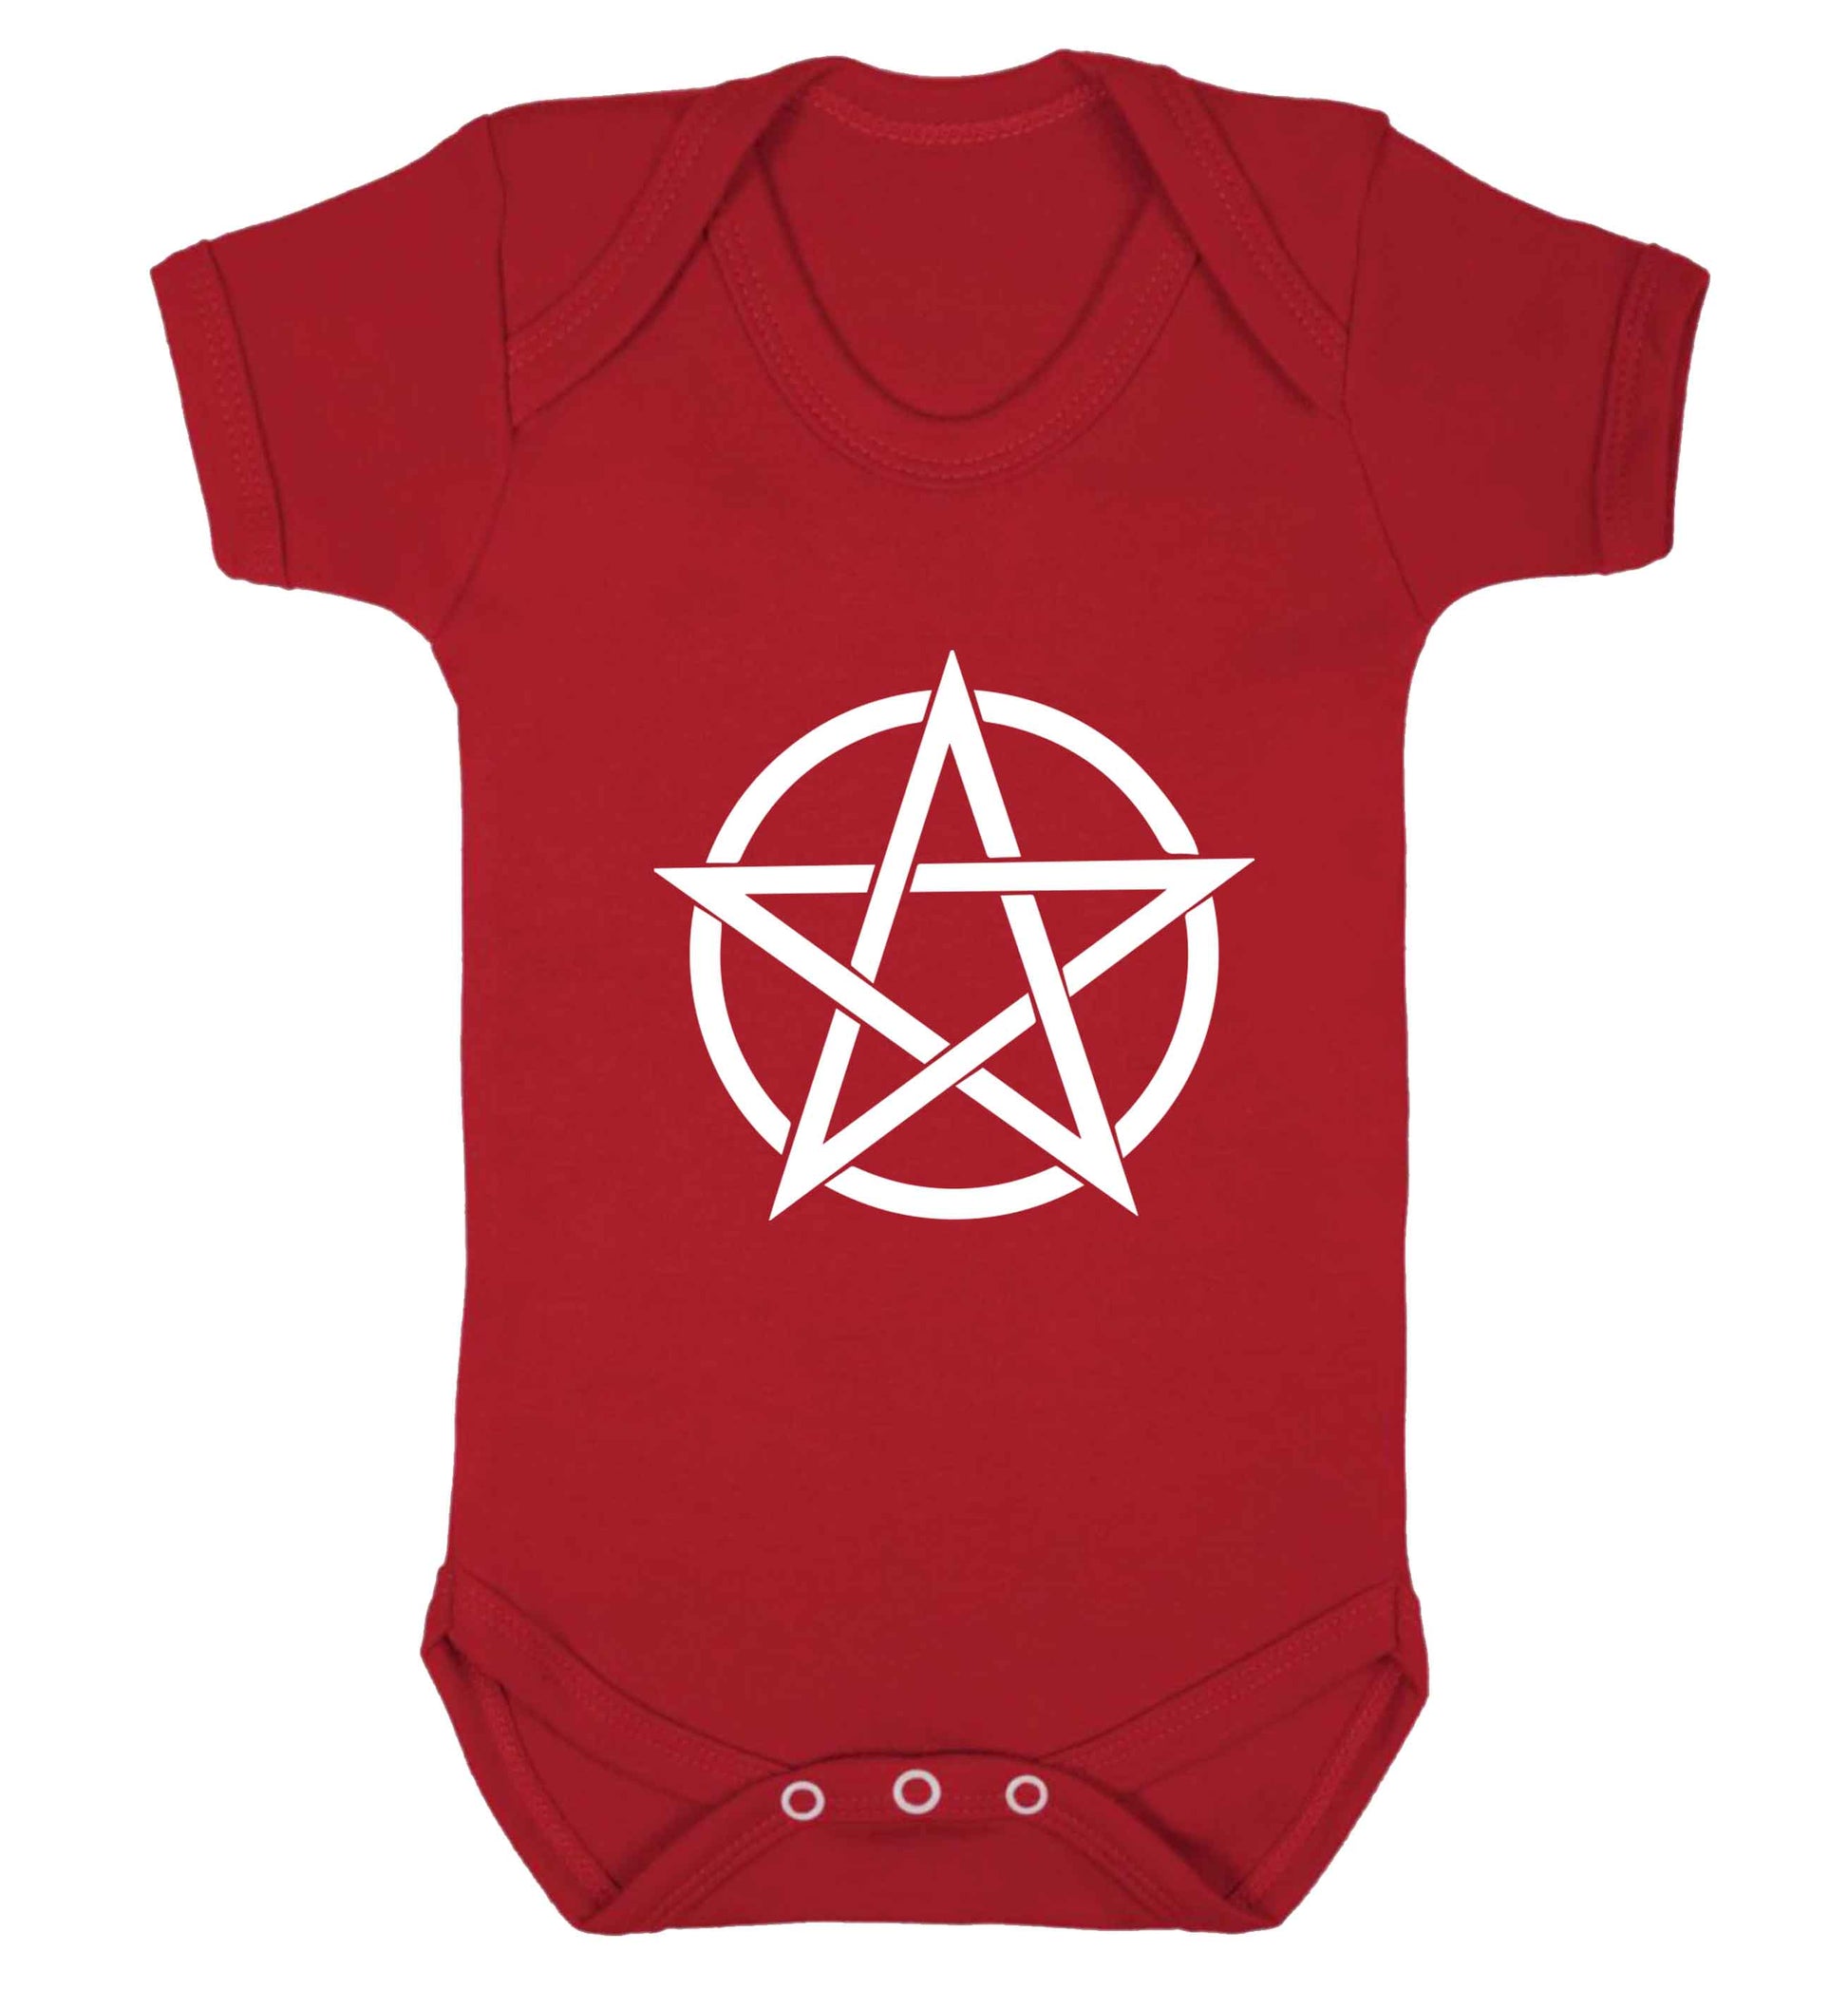 Pentagram symbol baby vest red 18-24 months